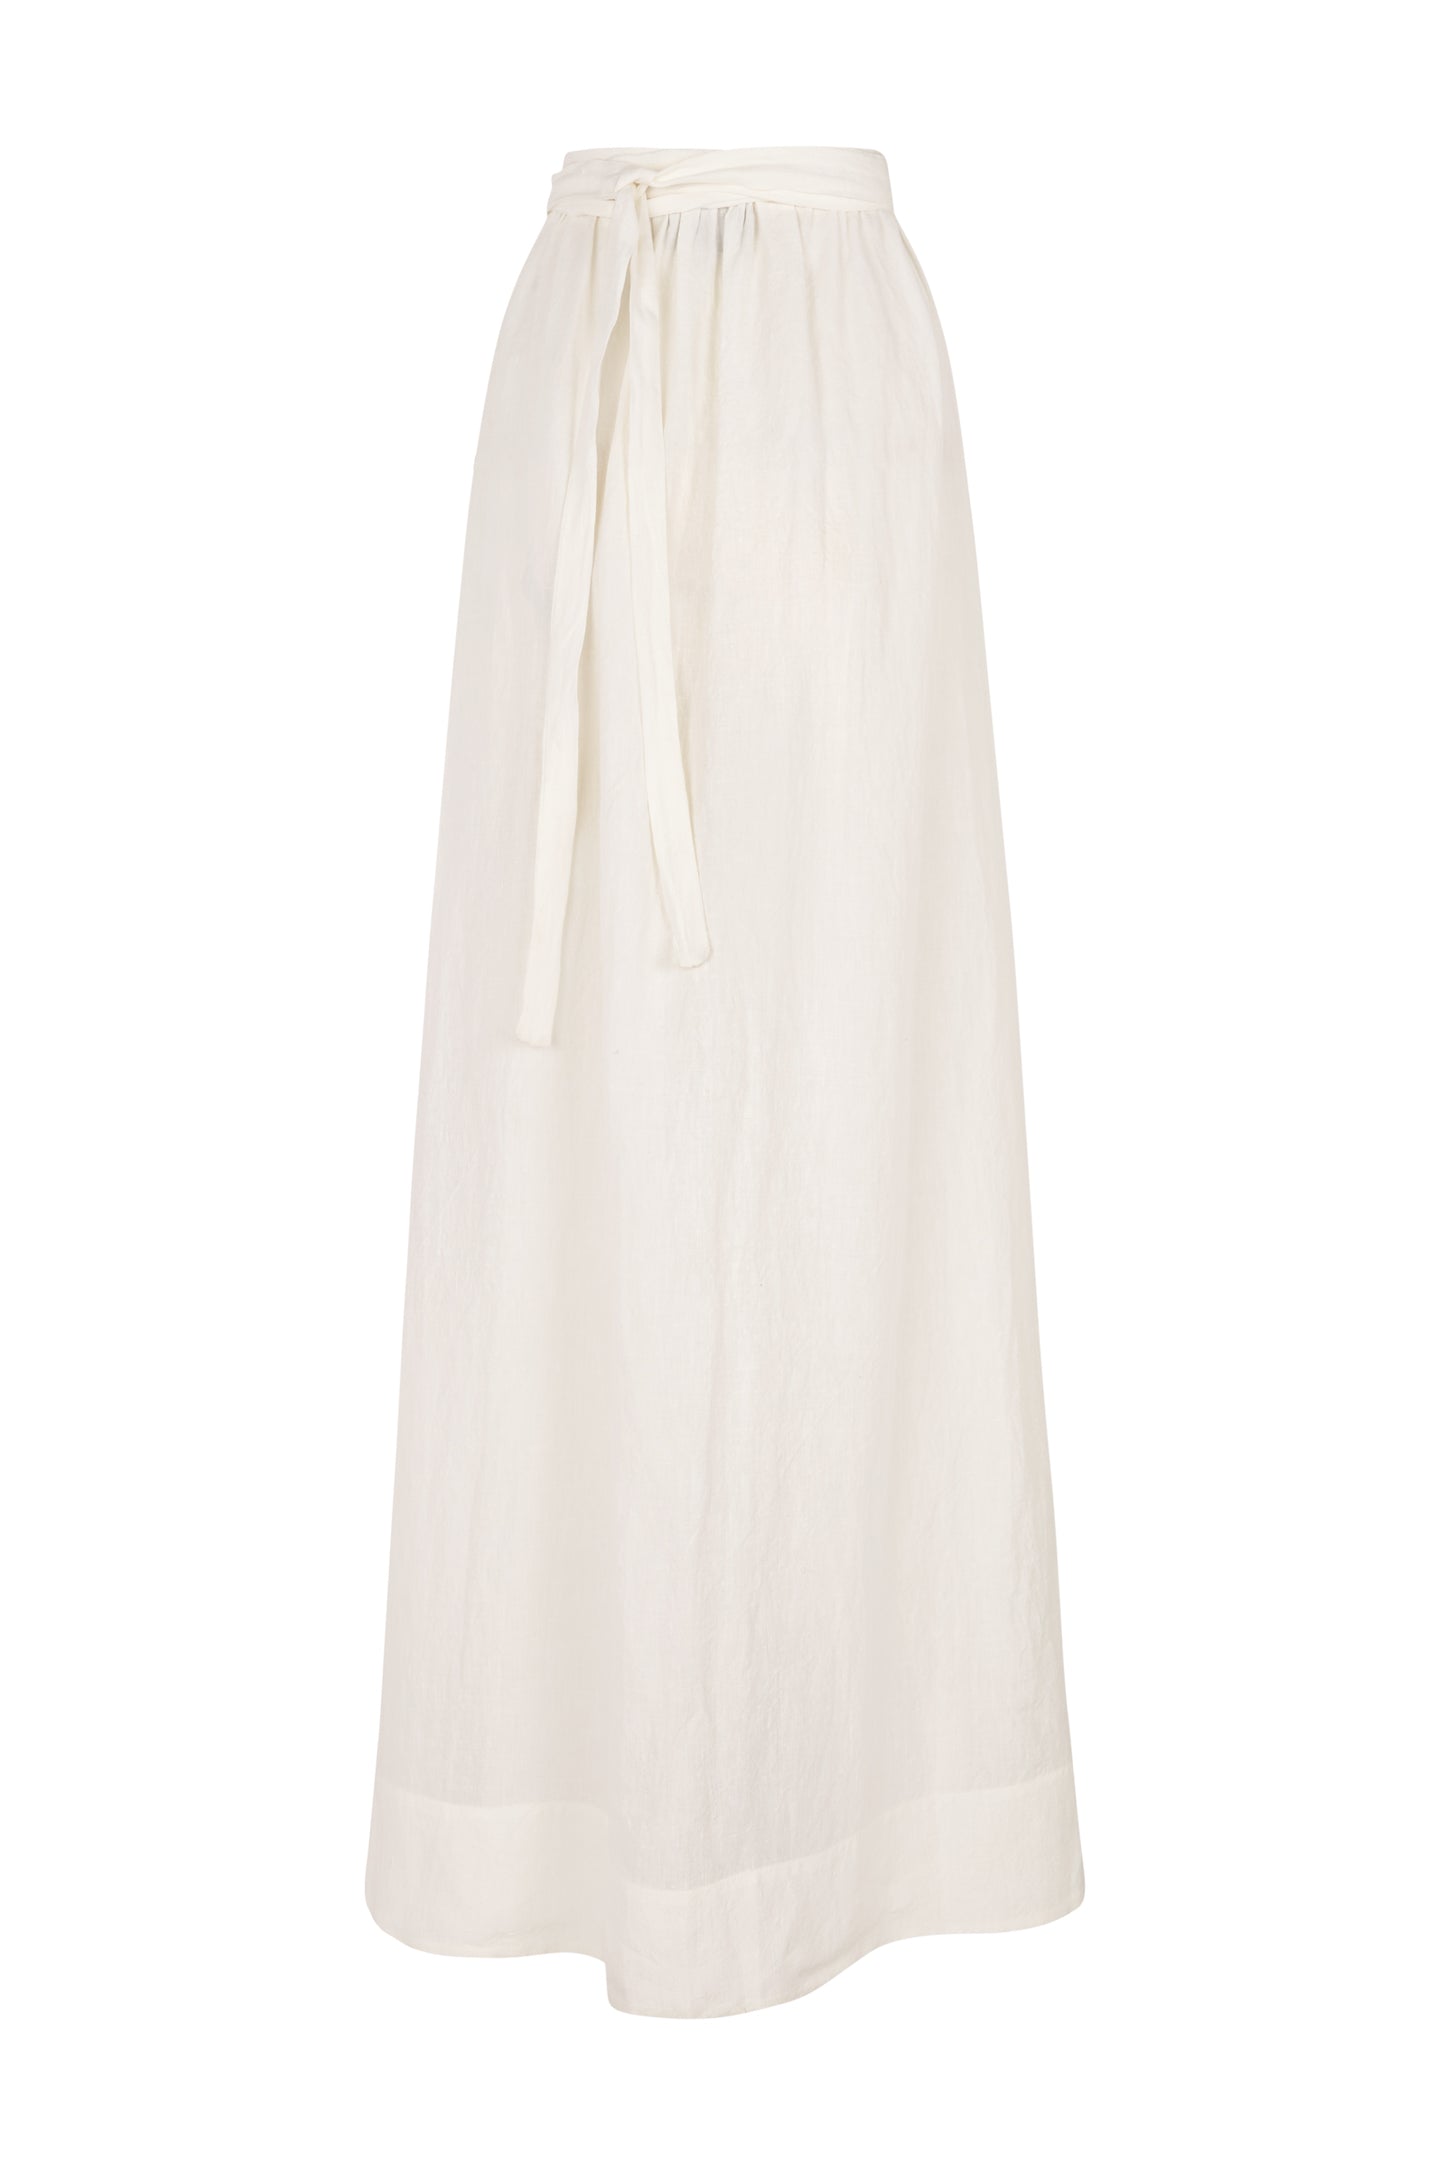 Marlo, long ecru linen skirt